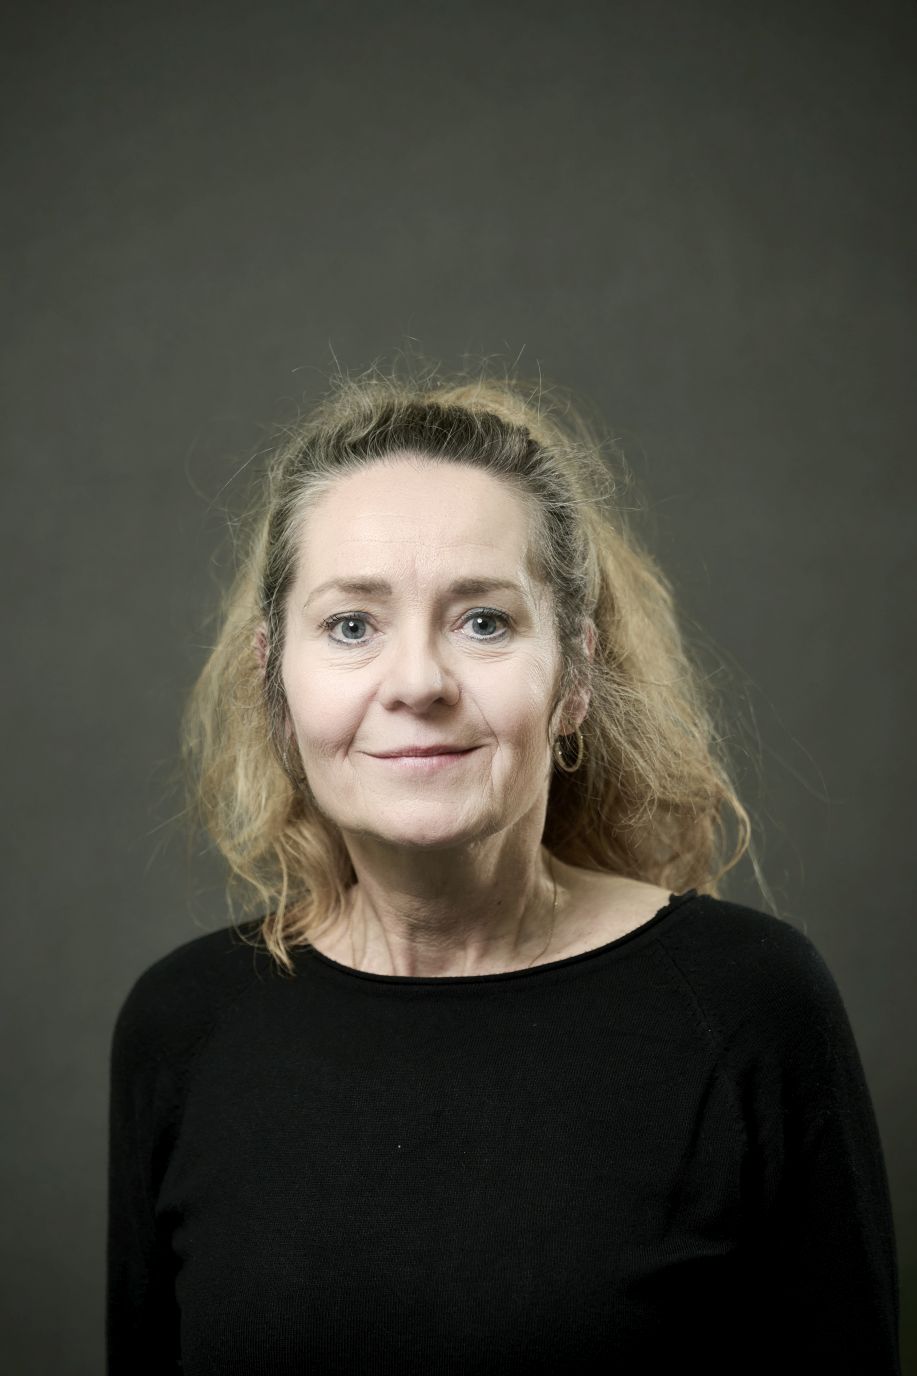 PD Dr. Franziska Suter-Riniker